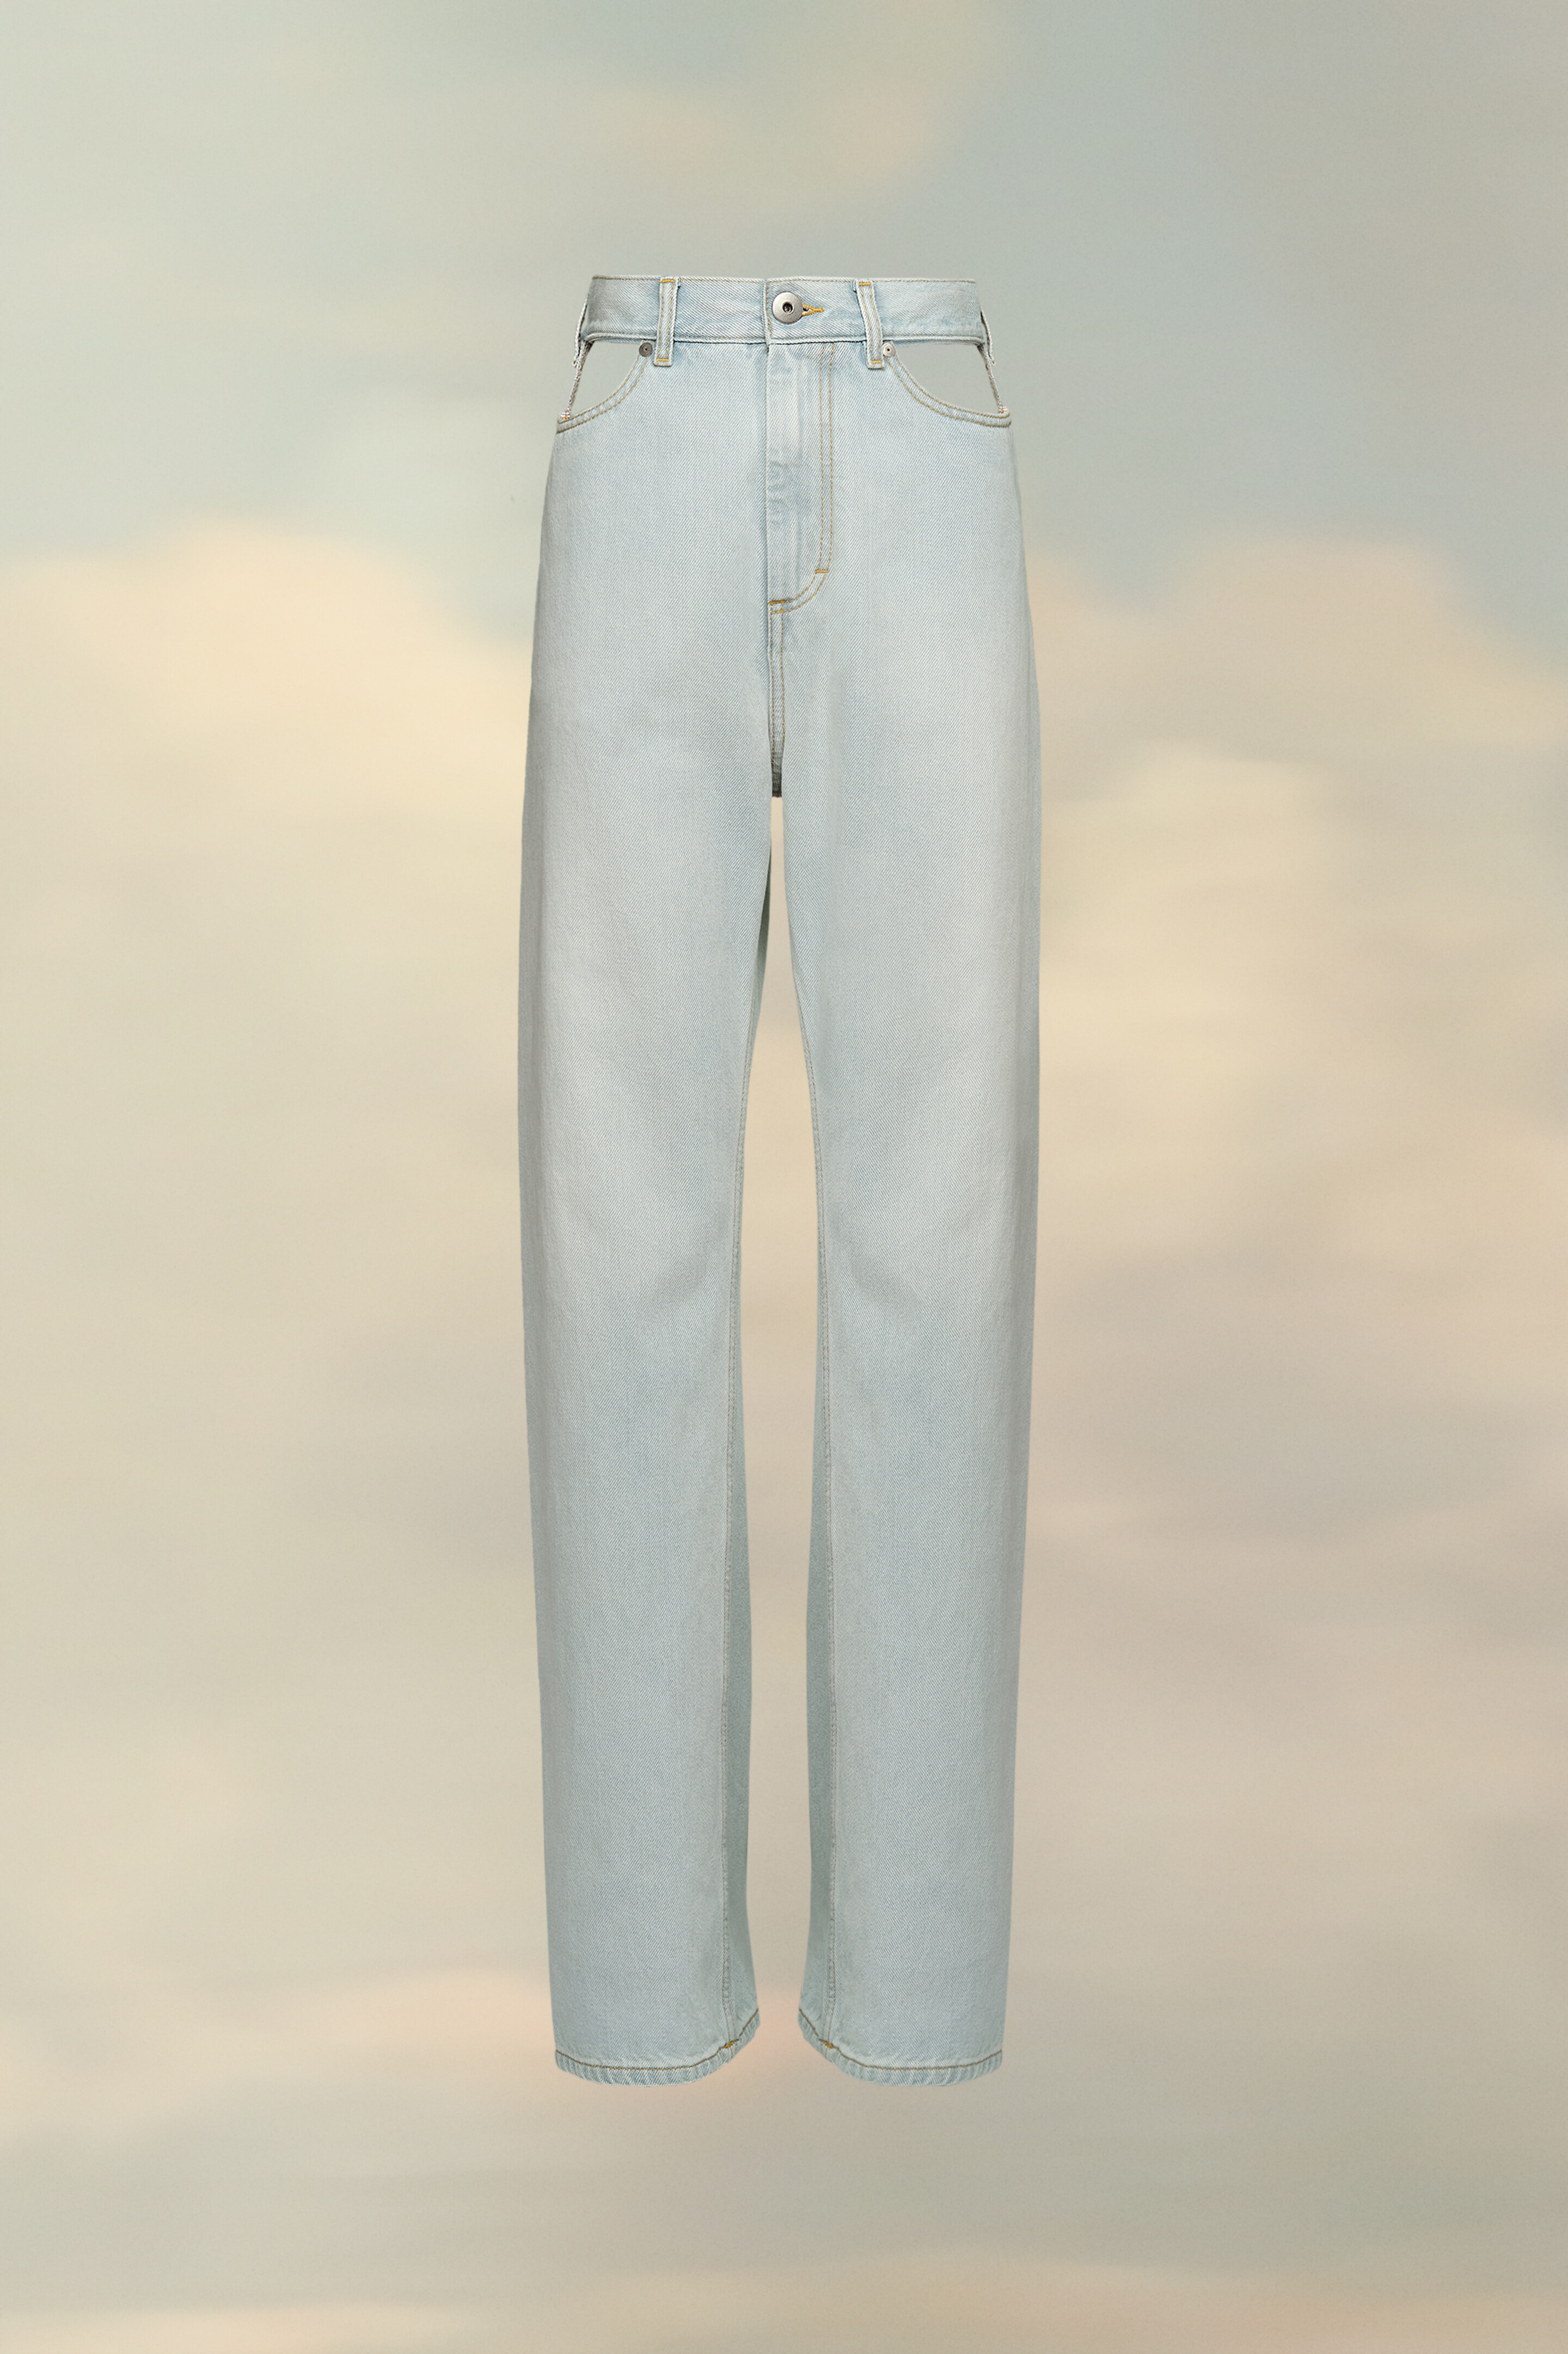 Décortiqué jeans - 1